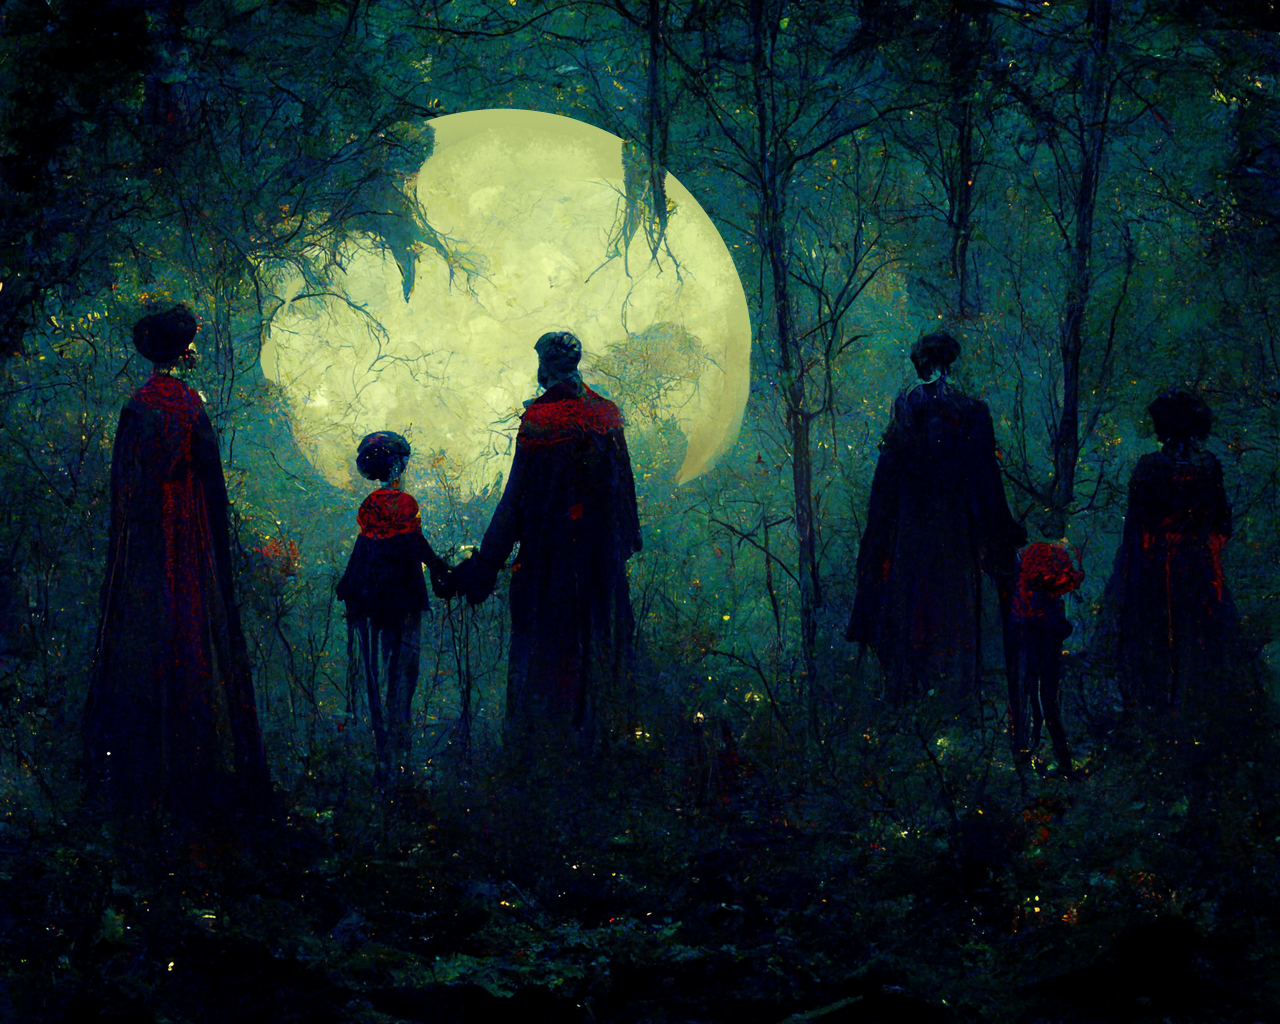 Vampire family in moonlit forest